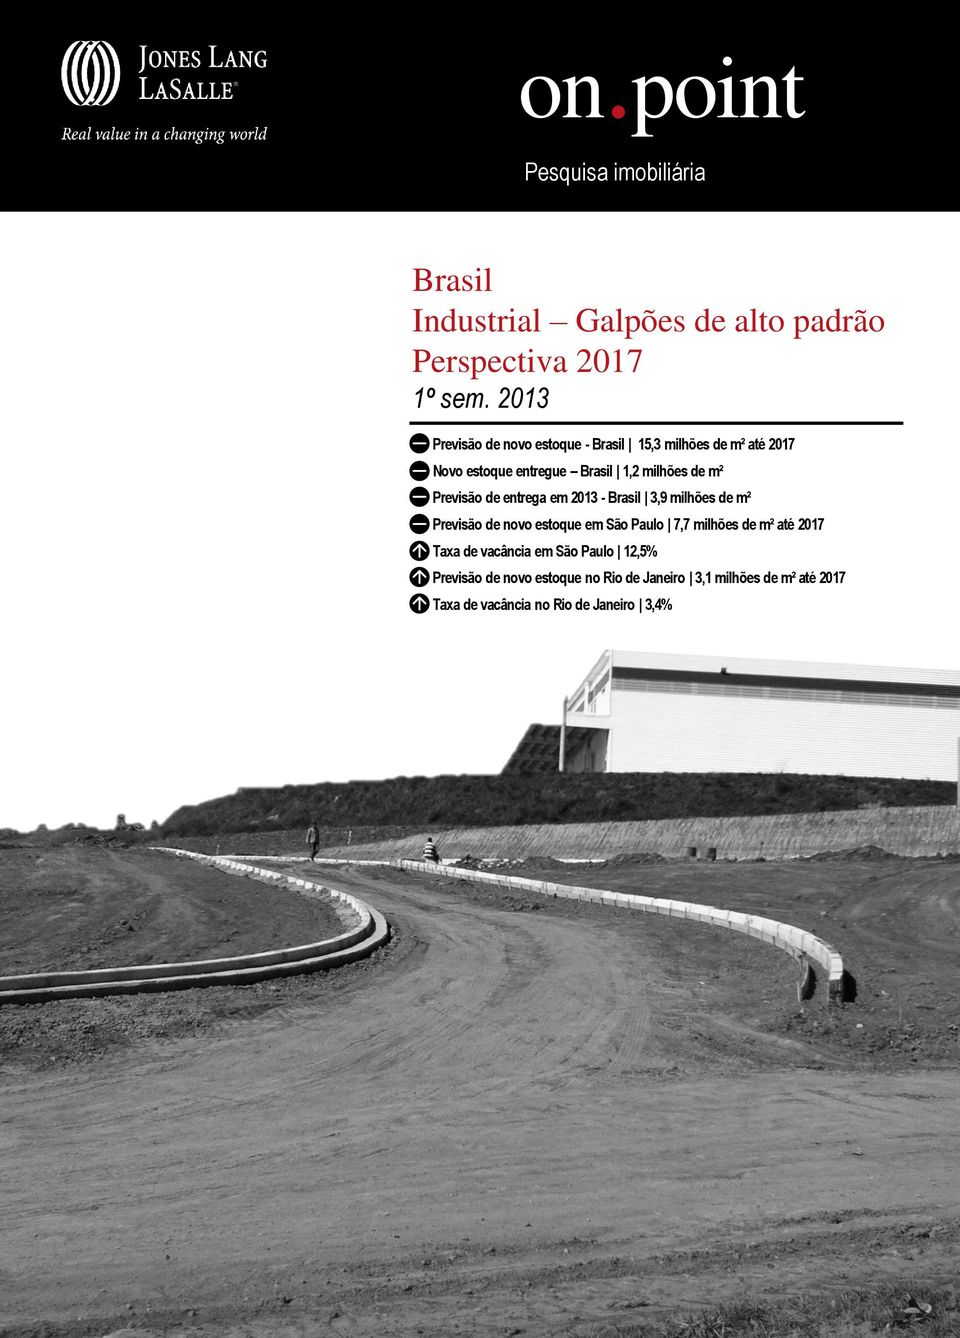 Previsão de entrega em 2013 - Brasil 3,9 milhões de m² Previsão de novo estoque em São Paulo 7,7 milhões de m² até